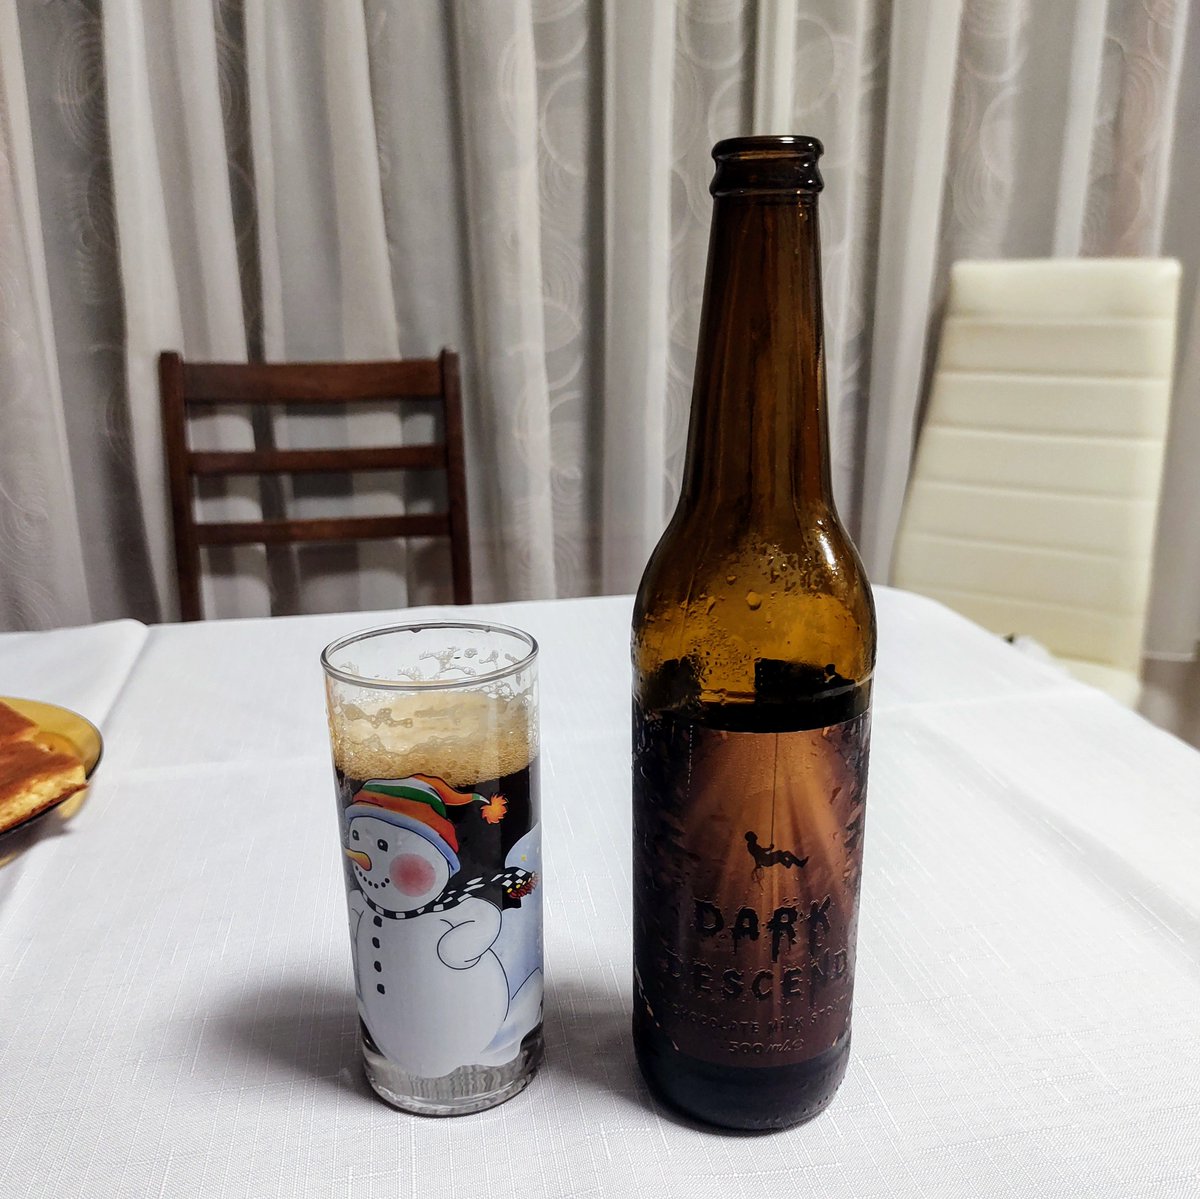 Втори тур със Снежко, този път с по-зимна бира. #avrenbrewery #darkdescend #milkstout #beer #cheers #наздраве